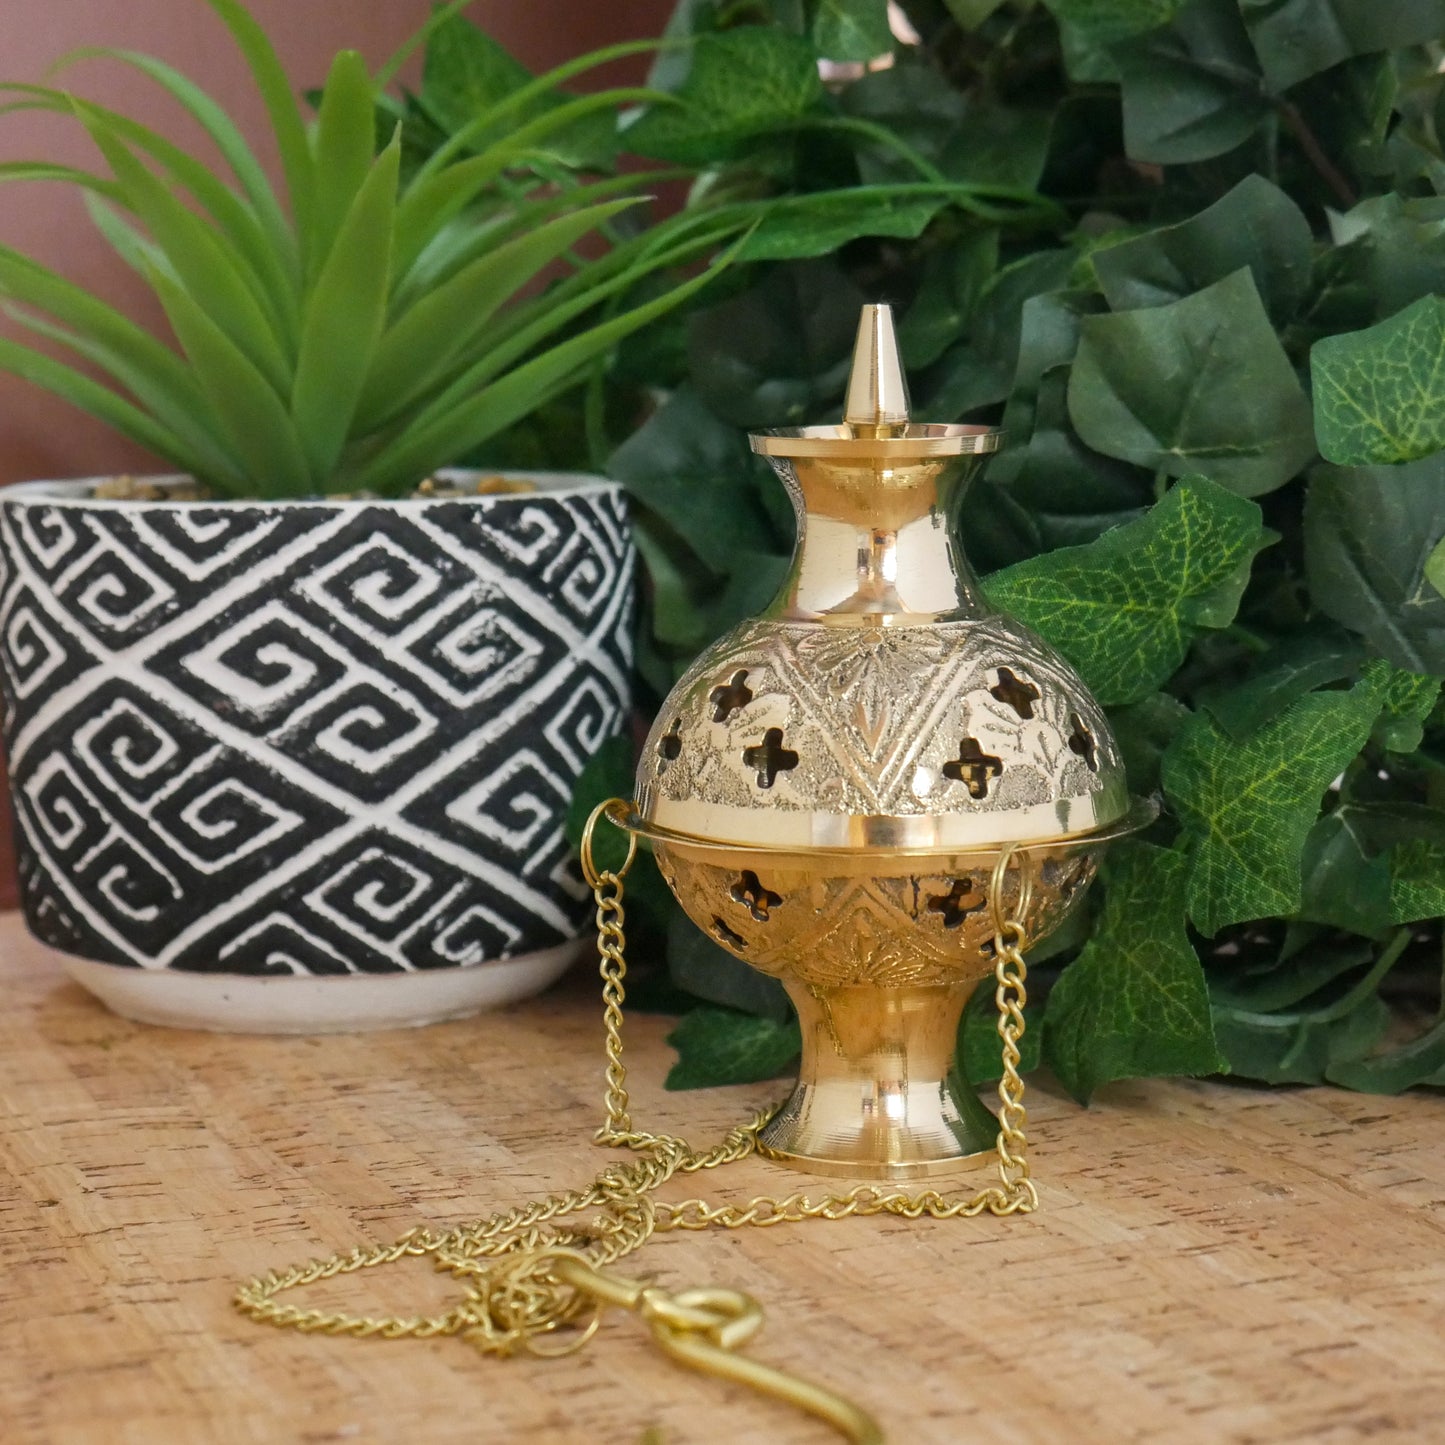 Golden Hanging Incense Burner  | Handmade Brass Incense Holder With Tray 4.5"